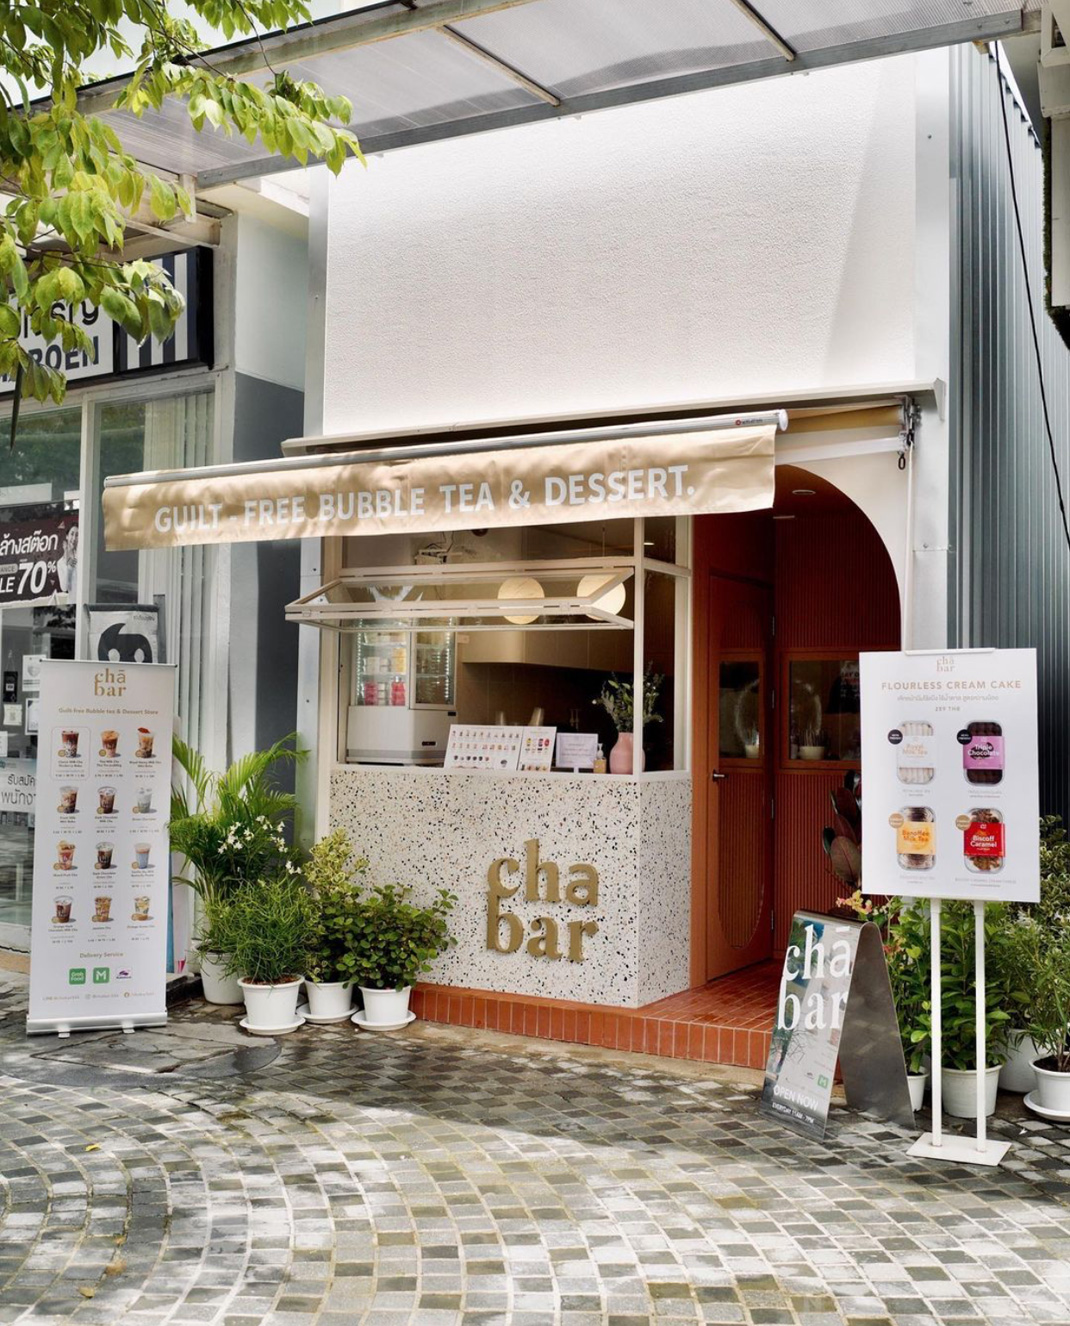 奶茶店CHA BAR BKK 泰国 曼谷 奶茶店 袖珍店 快闪店 水磨石 logo设计 vi设计 空间设计